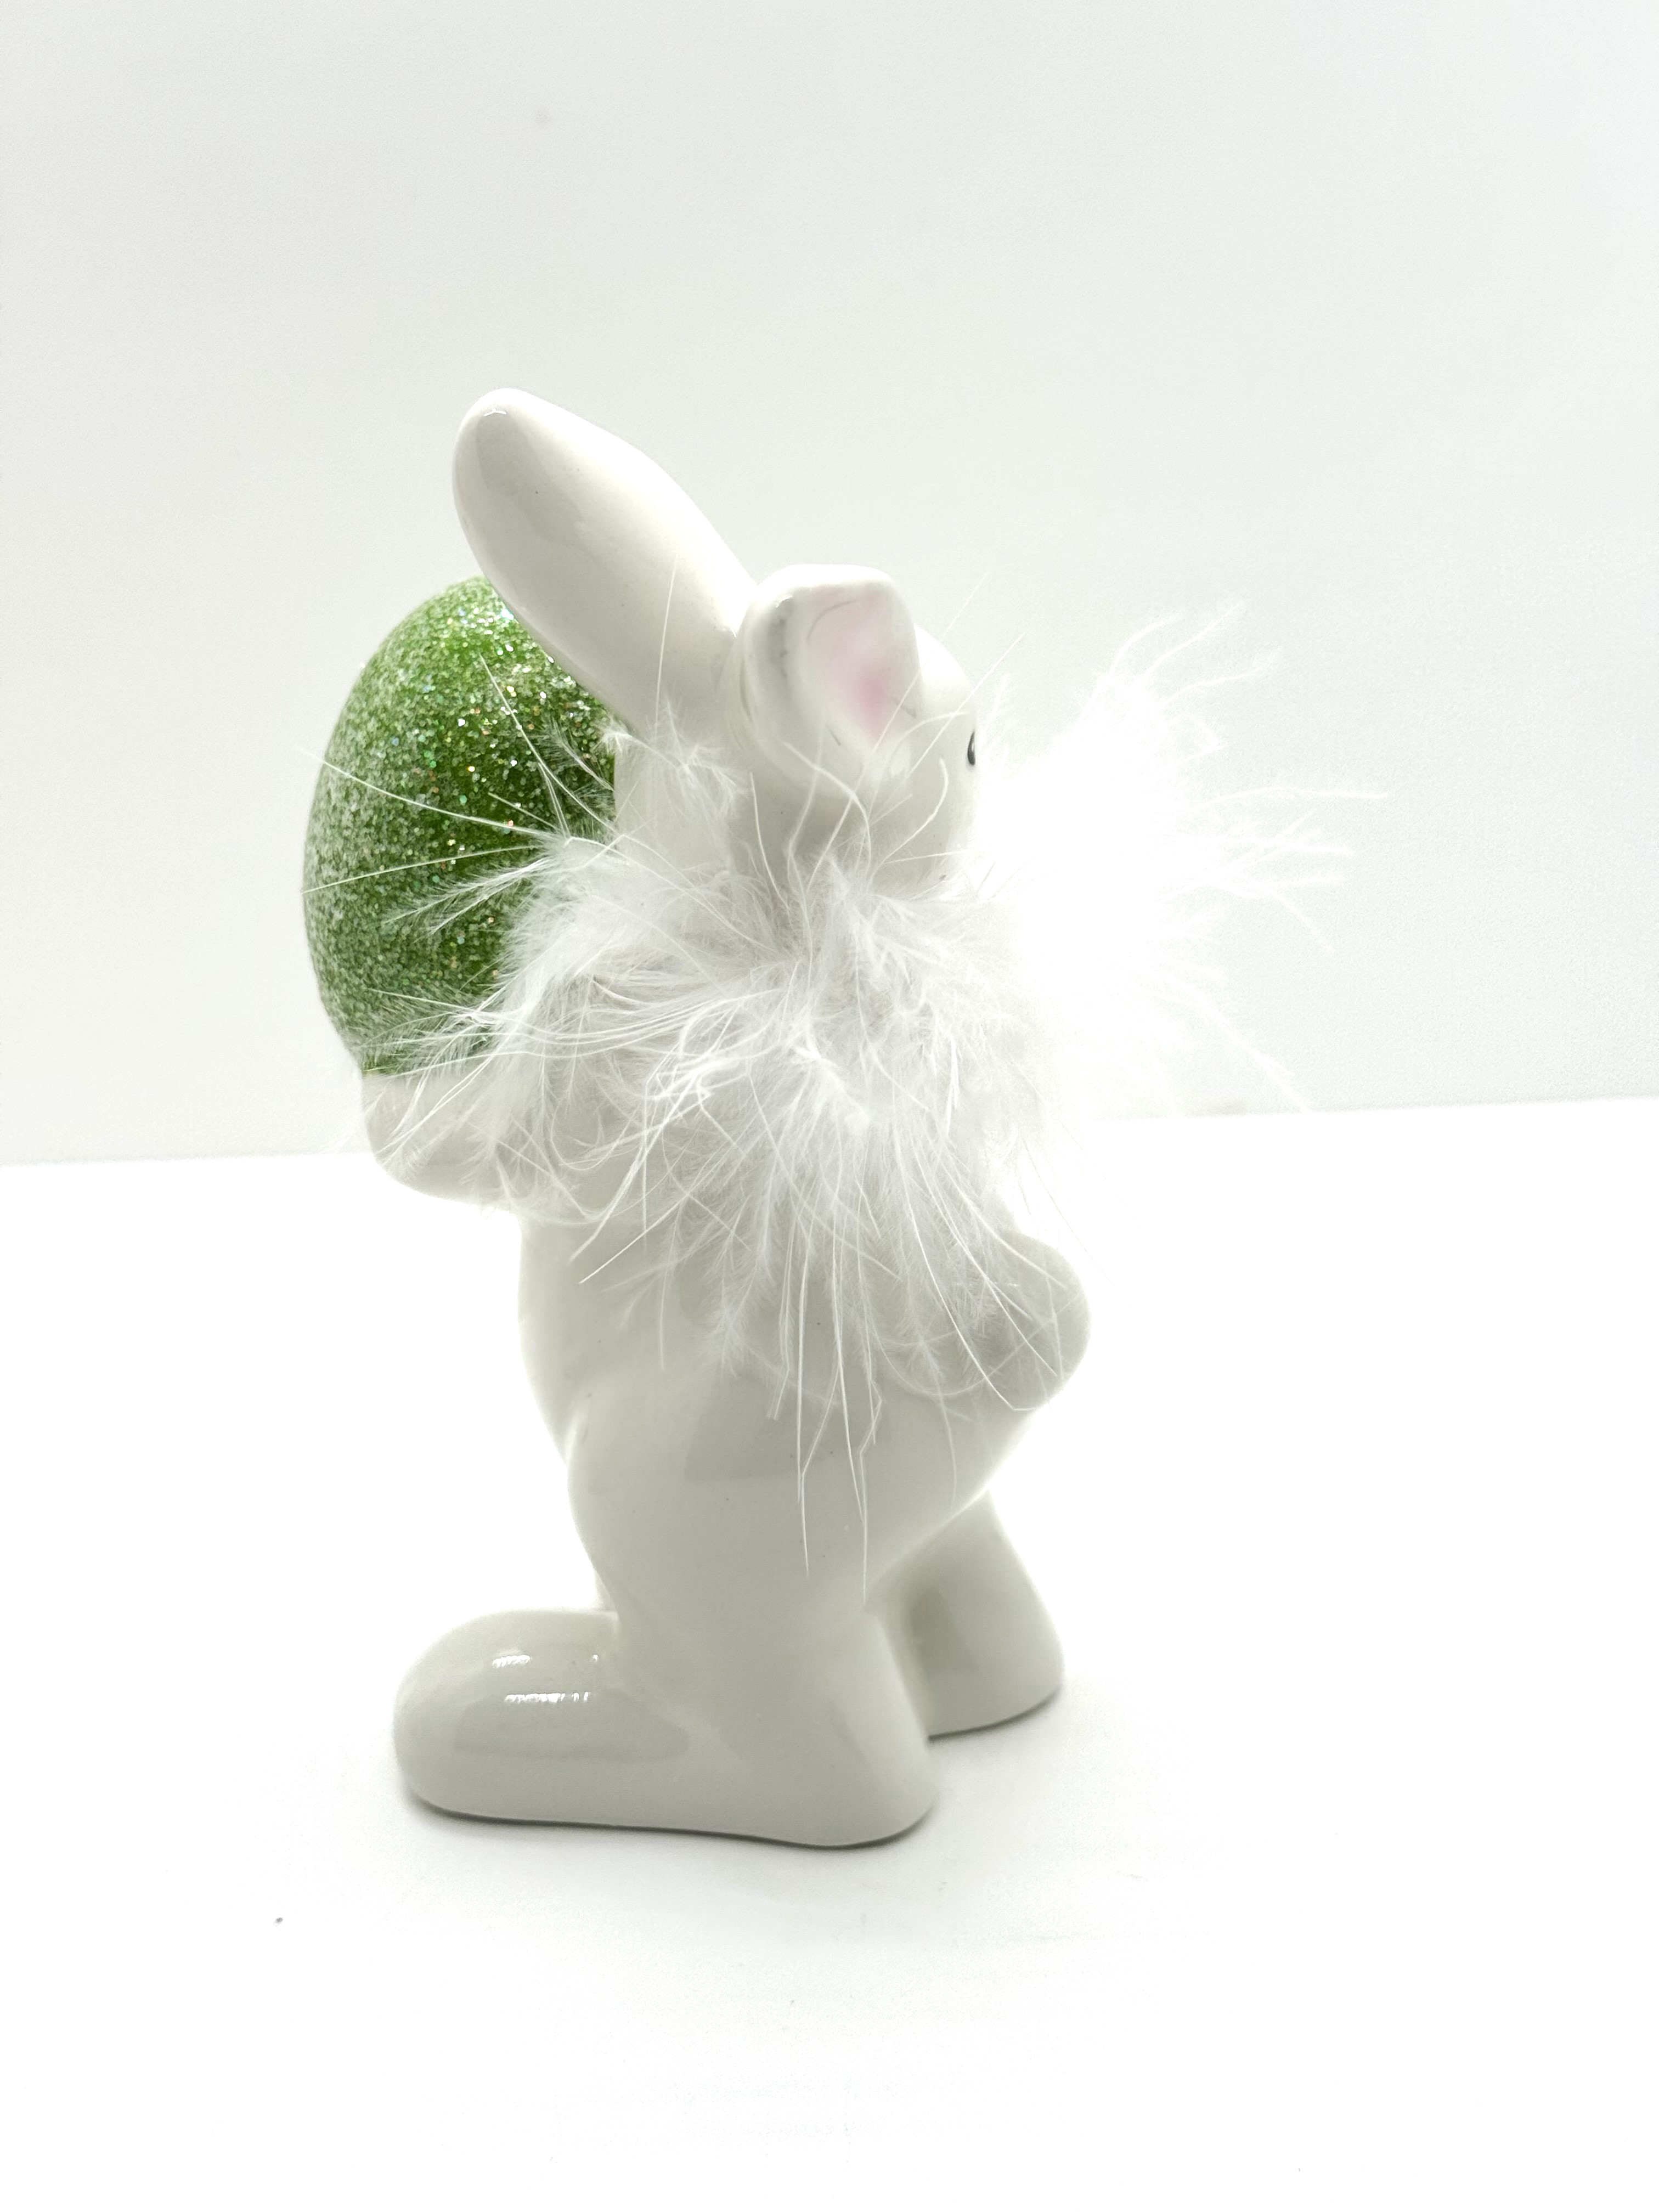 Oster-Figur Hase mit grün Ei, Feder + Glitzer sort. 13cm Keramik Frühjahr Dekor formano